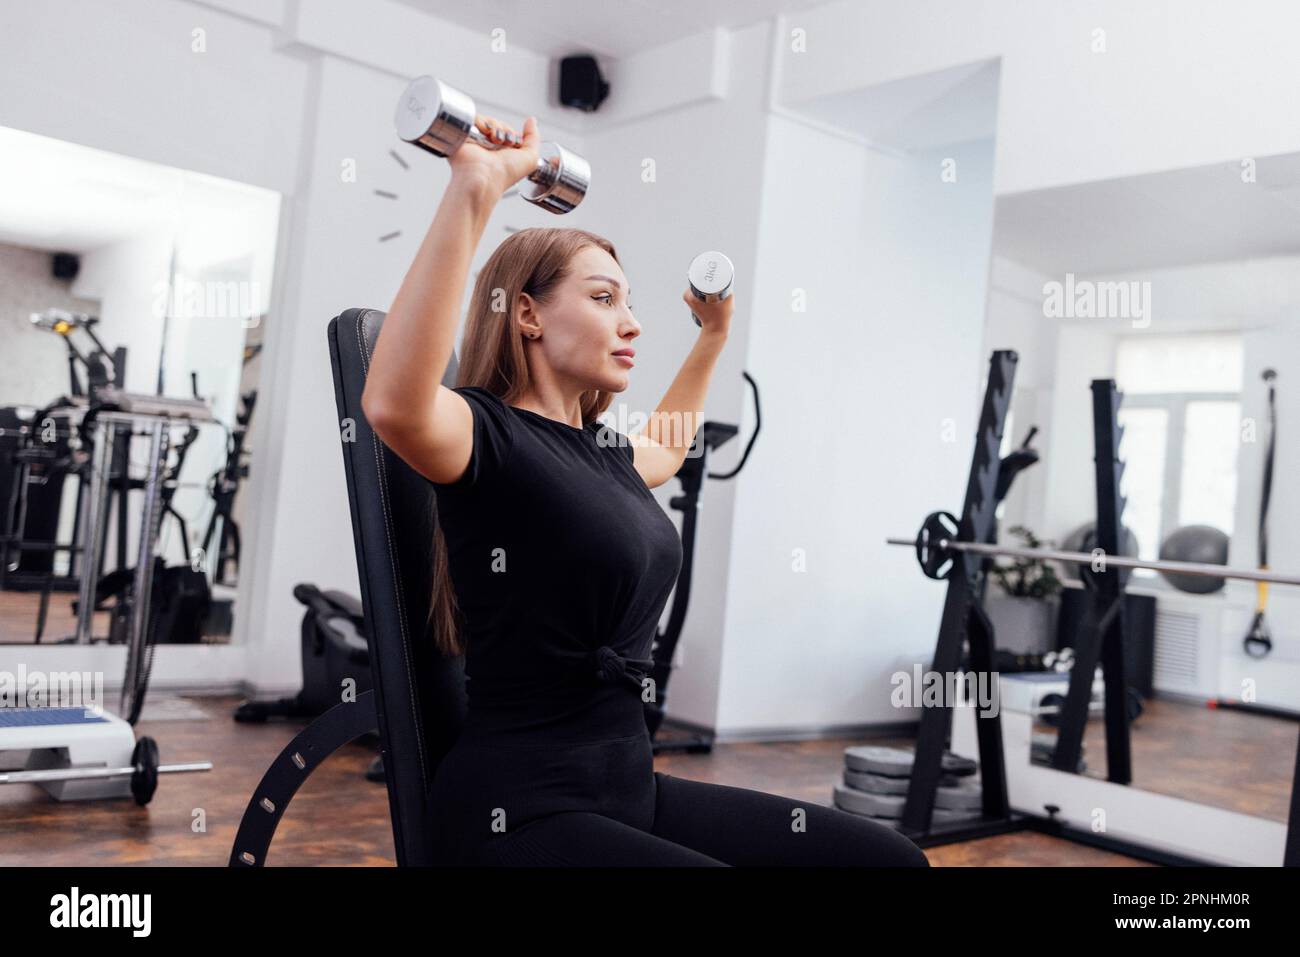 Eine sportliche junge blonde Frau in schwarzer Sportbekleidung presst auf einer geneigten Universalbank im Fitnessstudio oder Fitnessstudio die Kurzhantel. Pumpen der Muskeln von b Stockfoto